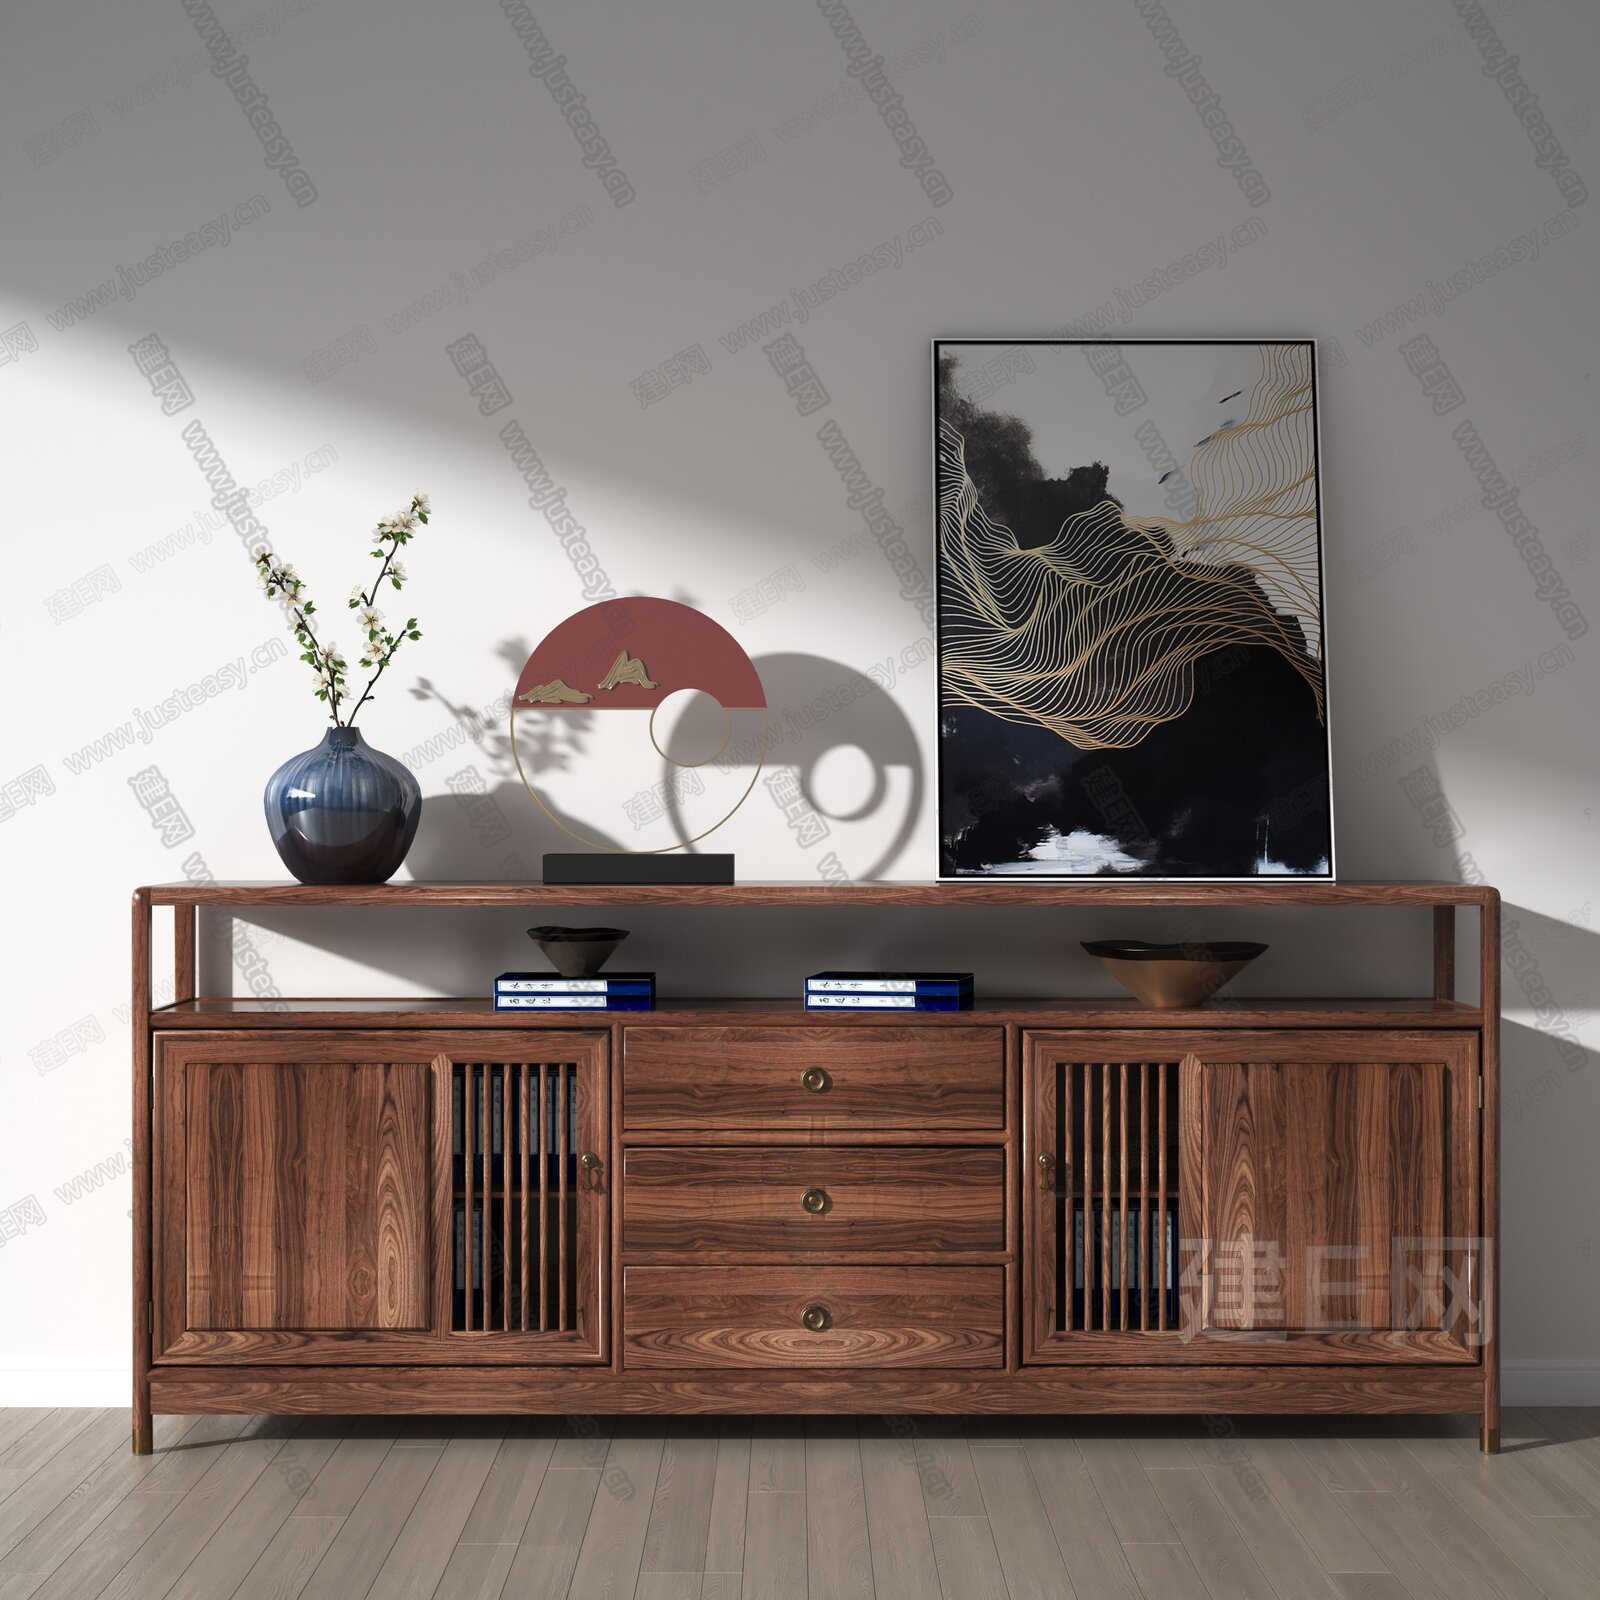 四居室原木色中式风格客厅电视柜效果图- 中国风